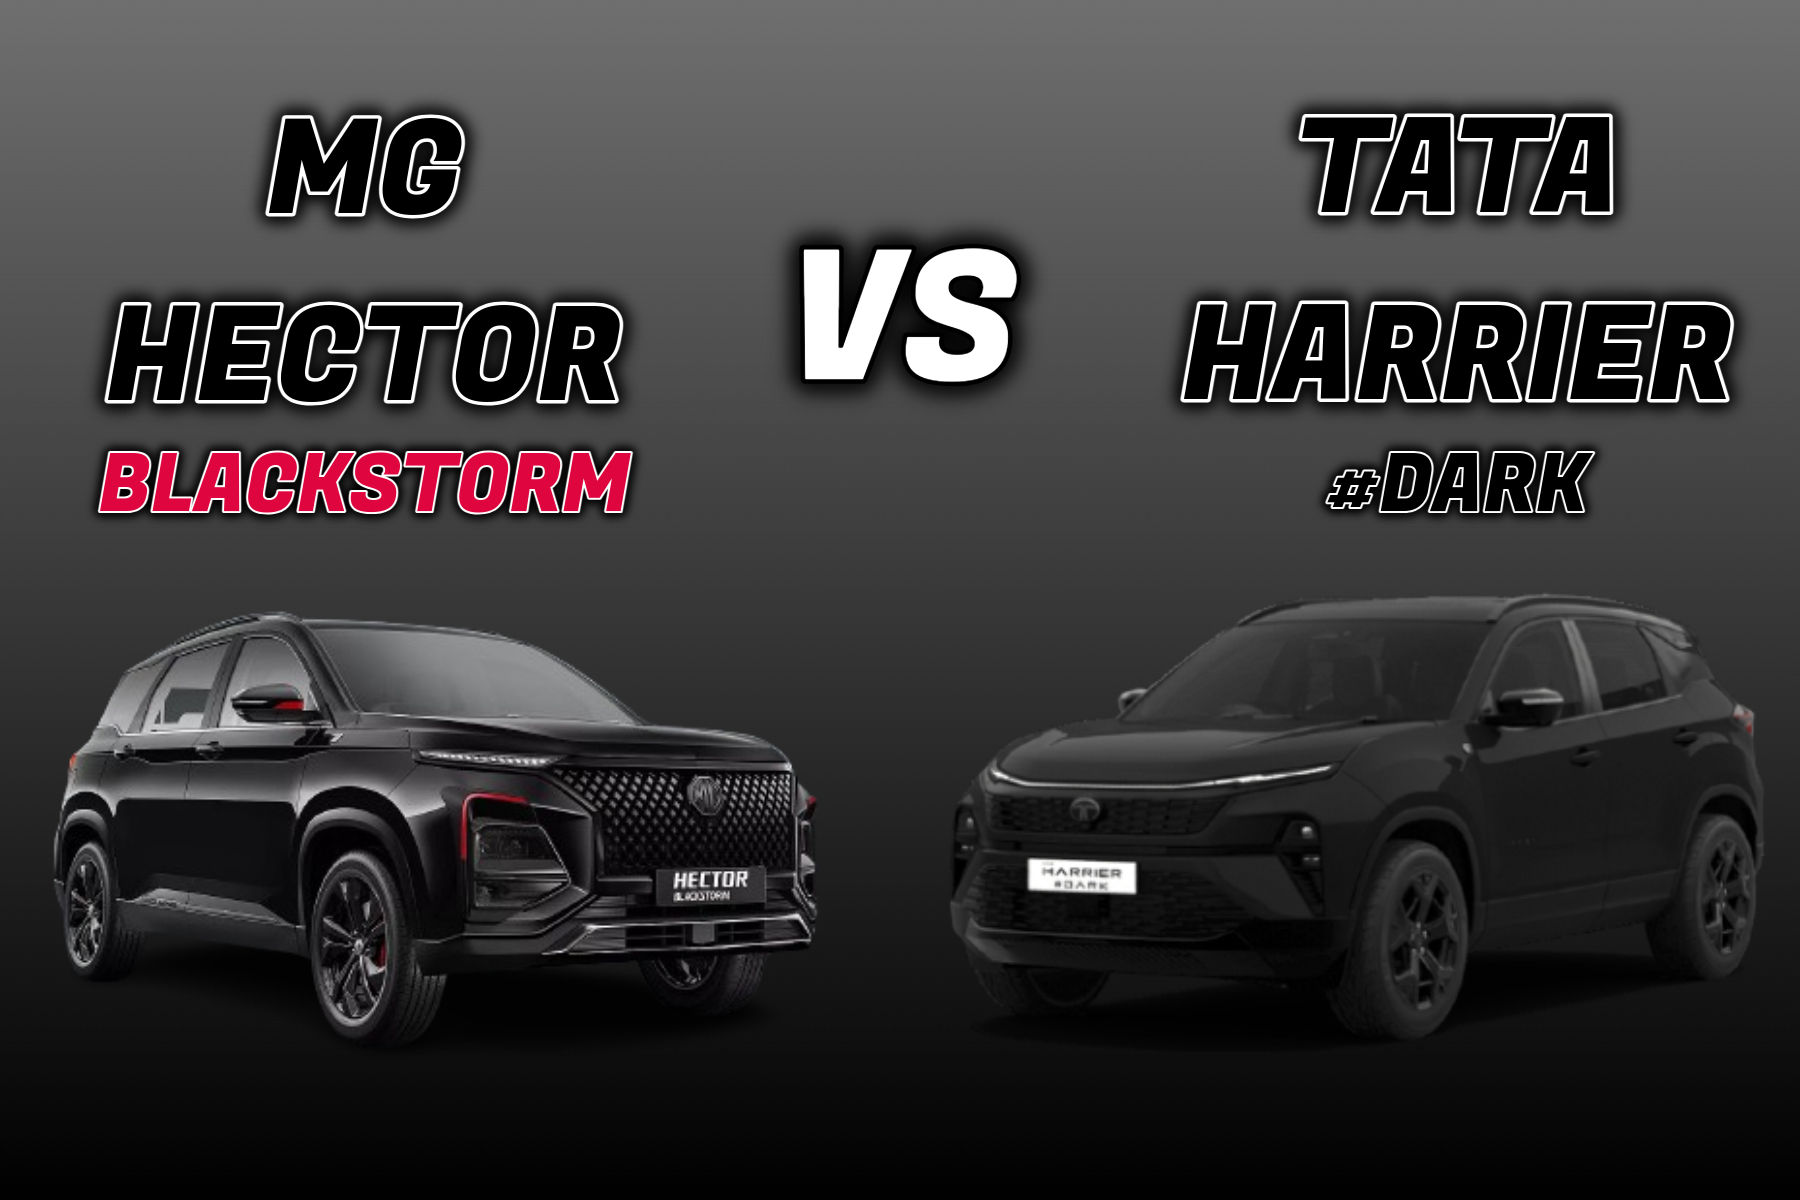 MG Hector Blackstorm vs Tata Harrier Dark